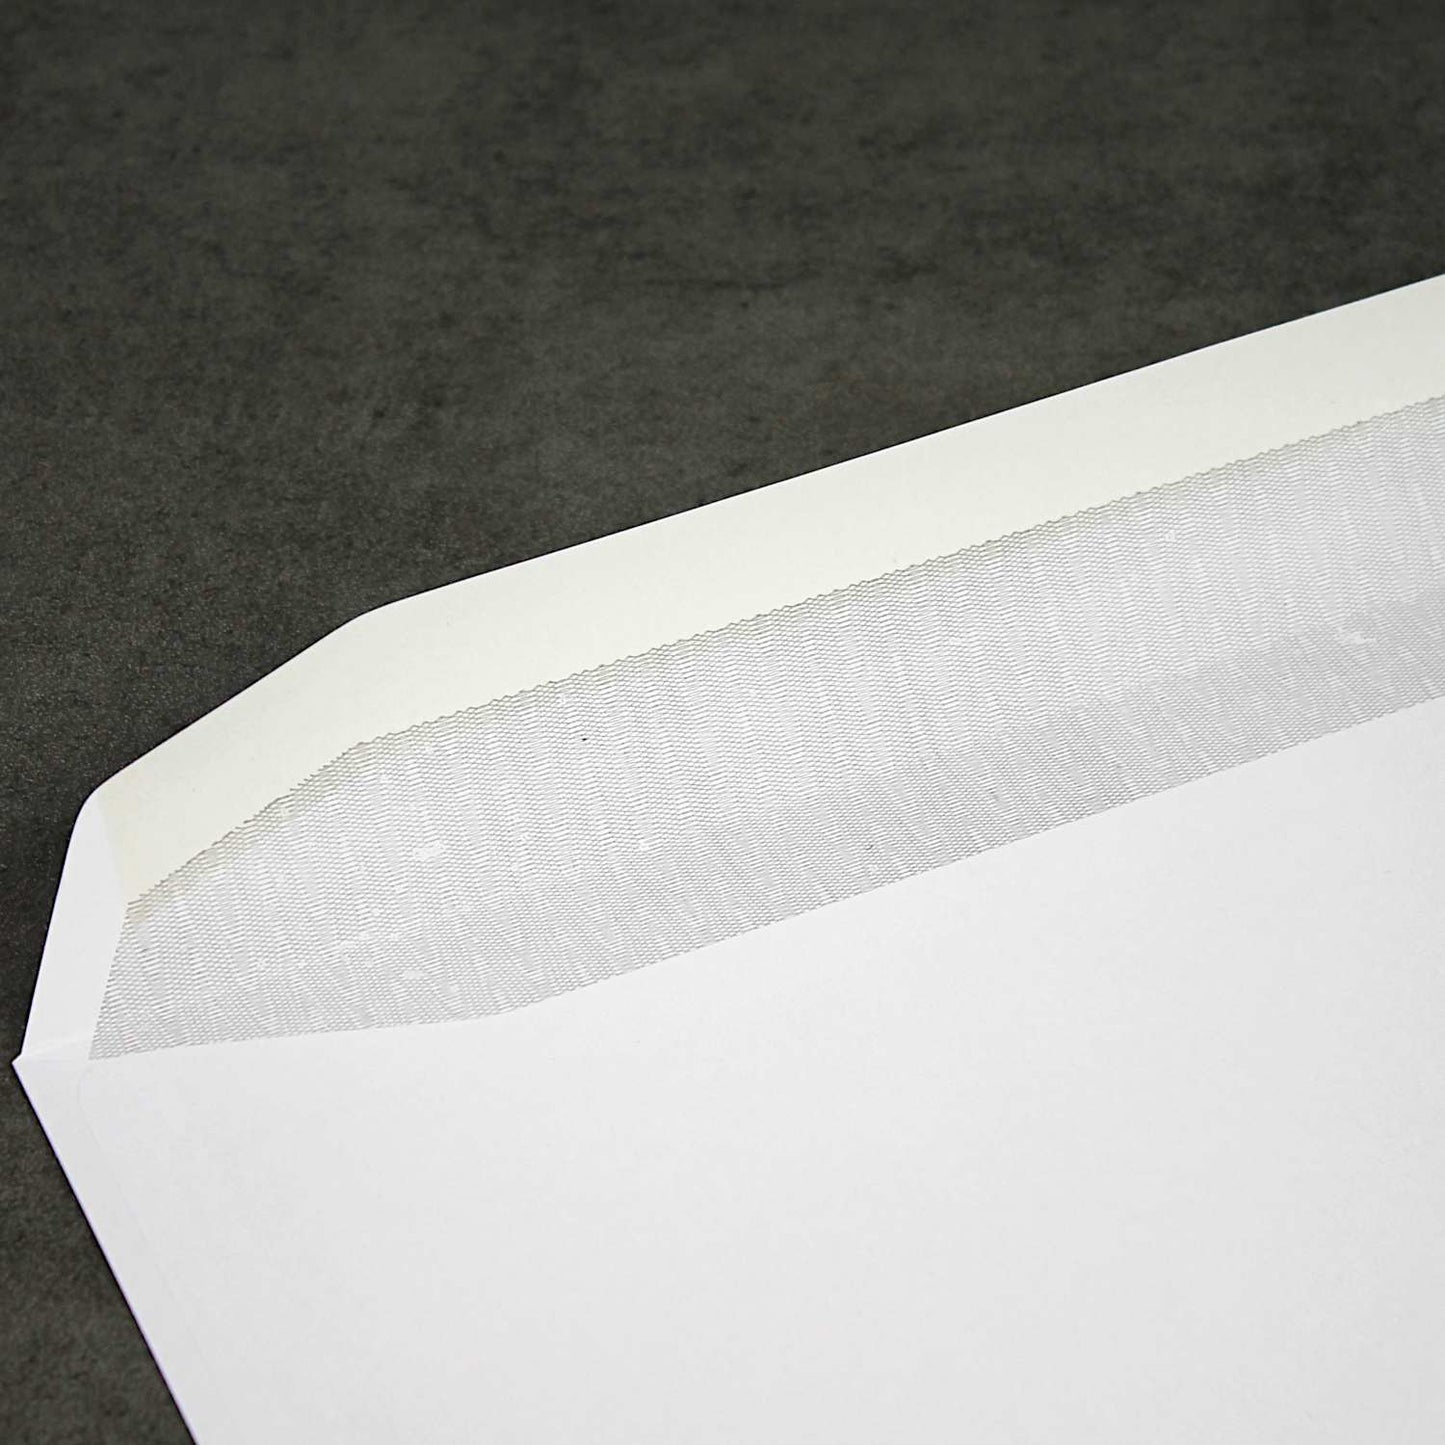 229x324 C4 White Gummed Wallet Envelopes